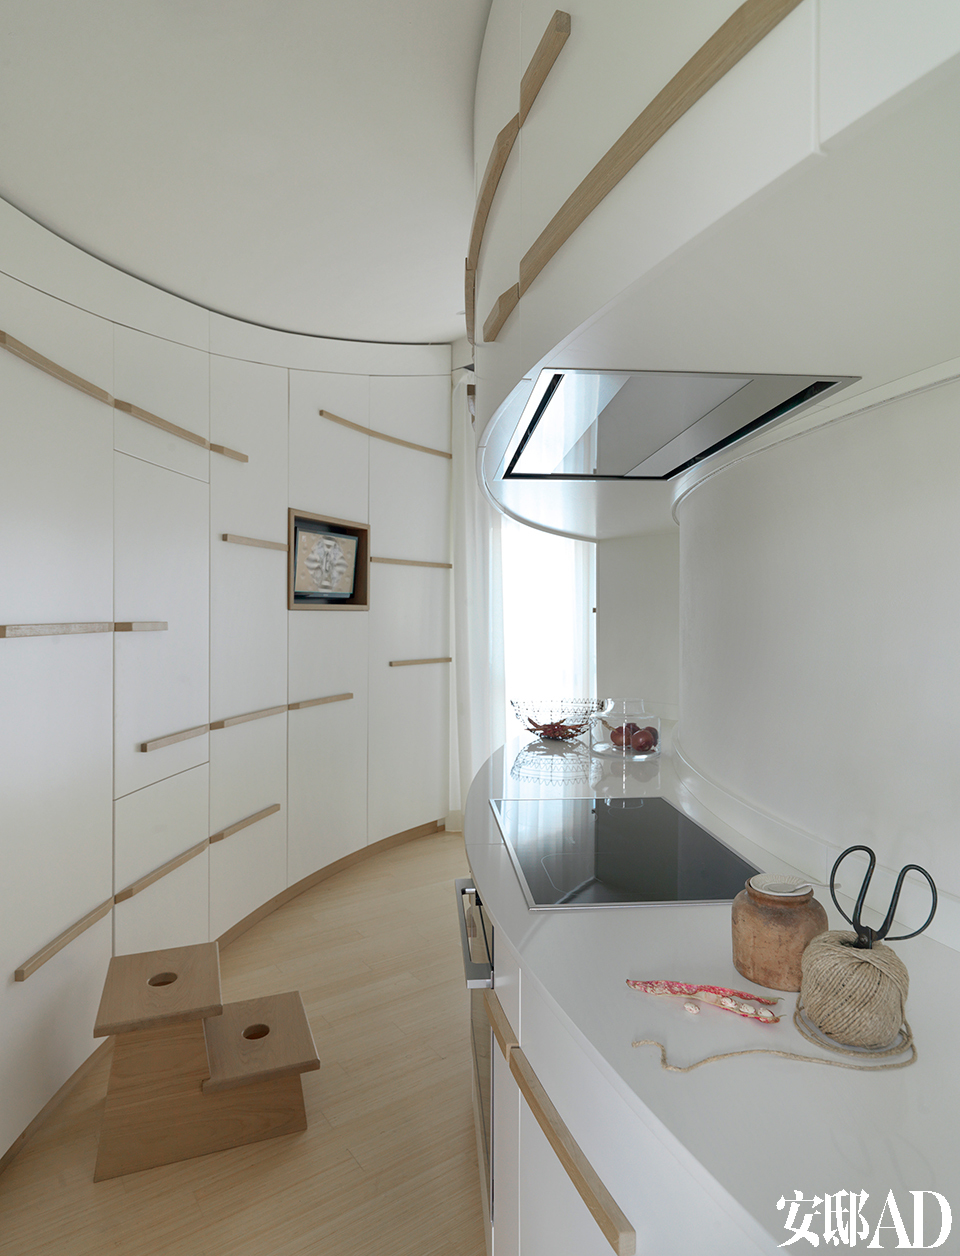 两位设计师攻克了厨房内弧形线条的设计挑战，为单调的墙壁注入了动感的韵律。弧形的厨房给两位设计师带来了一定的挑战，设施来自Miele，木制的小梯凳是设计师自己定制而成的。